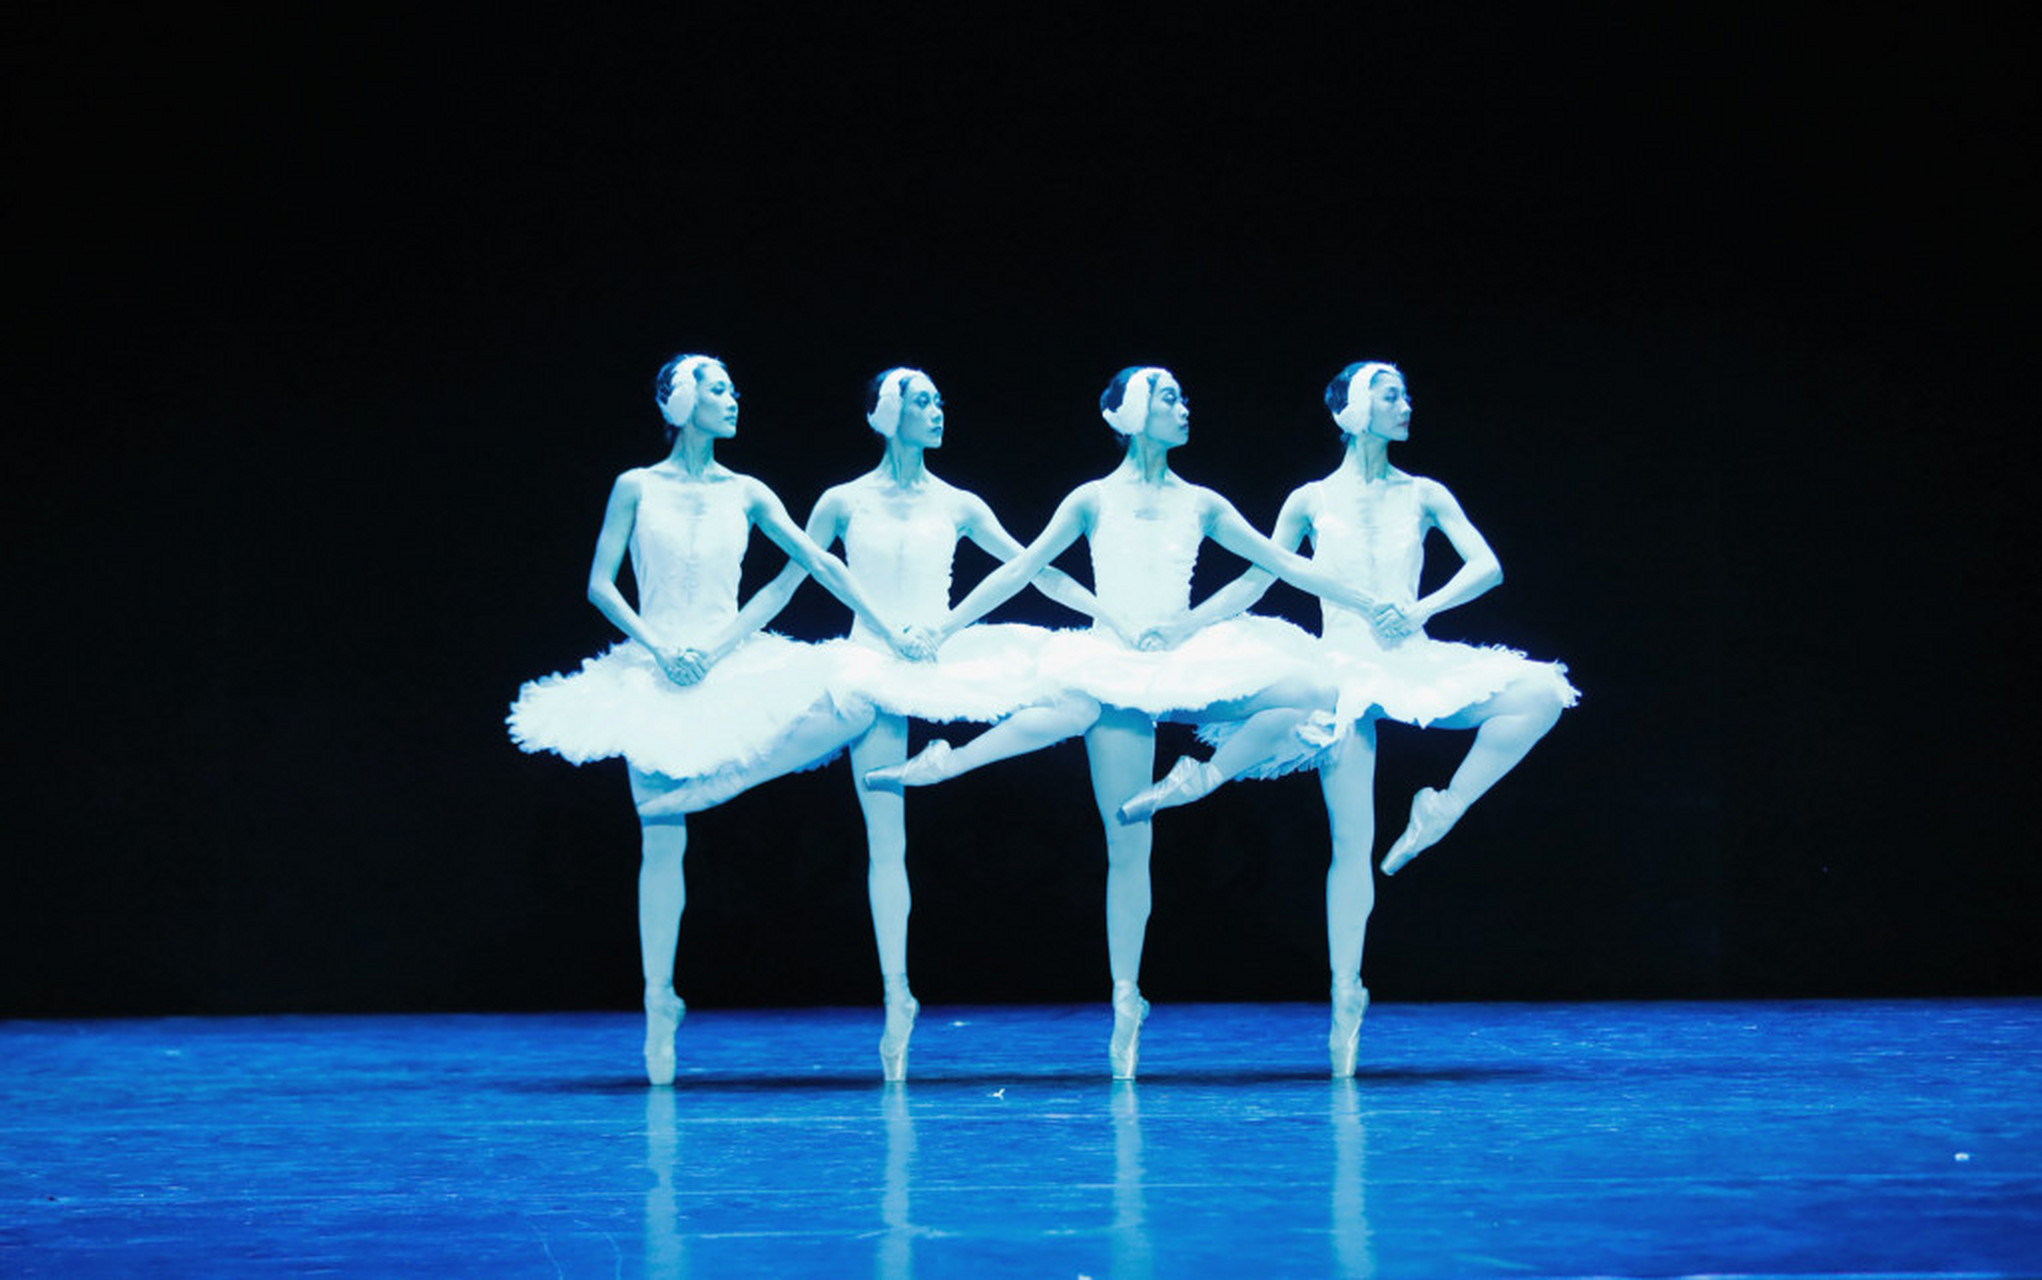 辽宁芭蕾舞团榜样图片